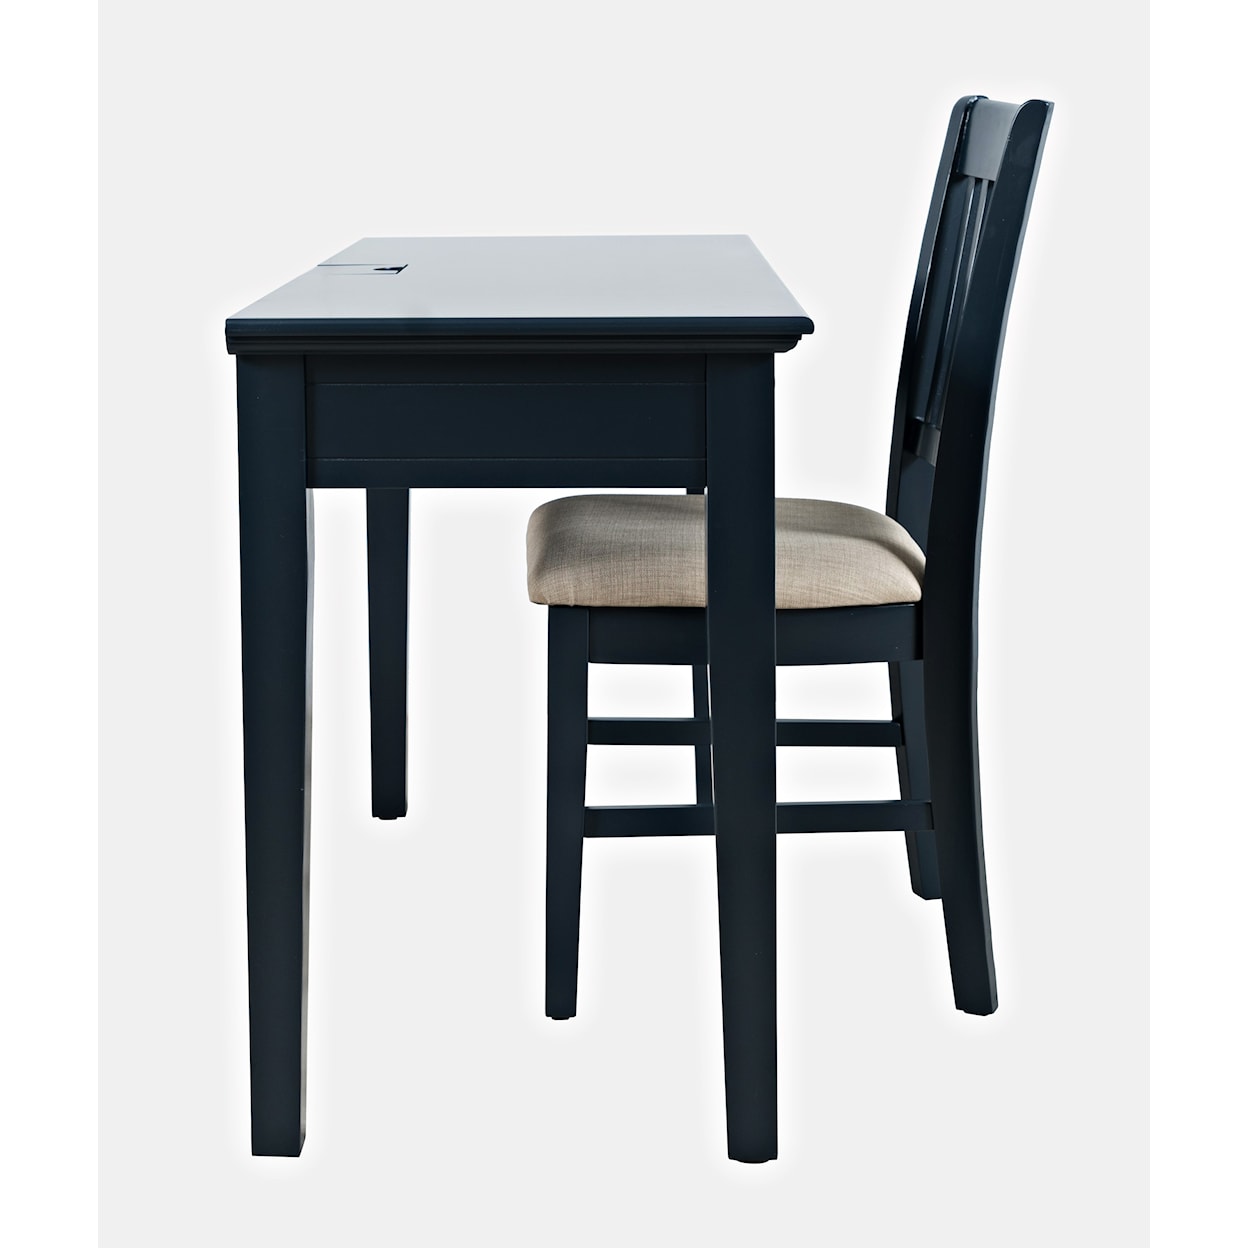 Jofran Craftsman Desk Chair